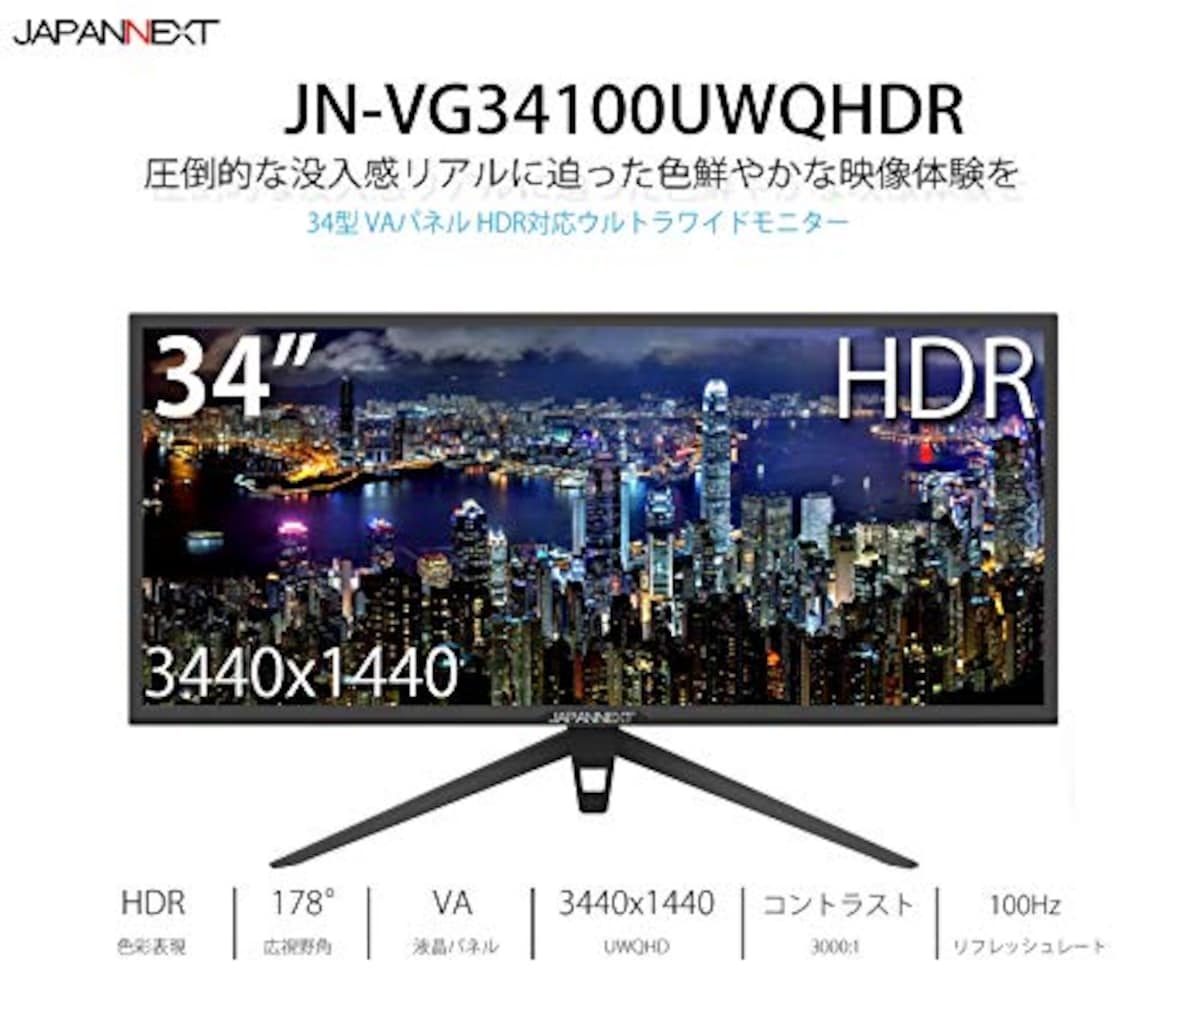  JAPANNEXT JN-VG34100UWQHDR 34インチ HDR対応ウルトラワイド液晶ディスプレイ HDMI 100Hz ゲーミングモニター画像2 